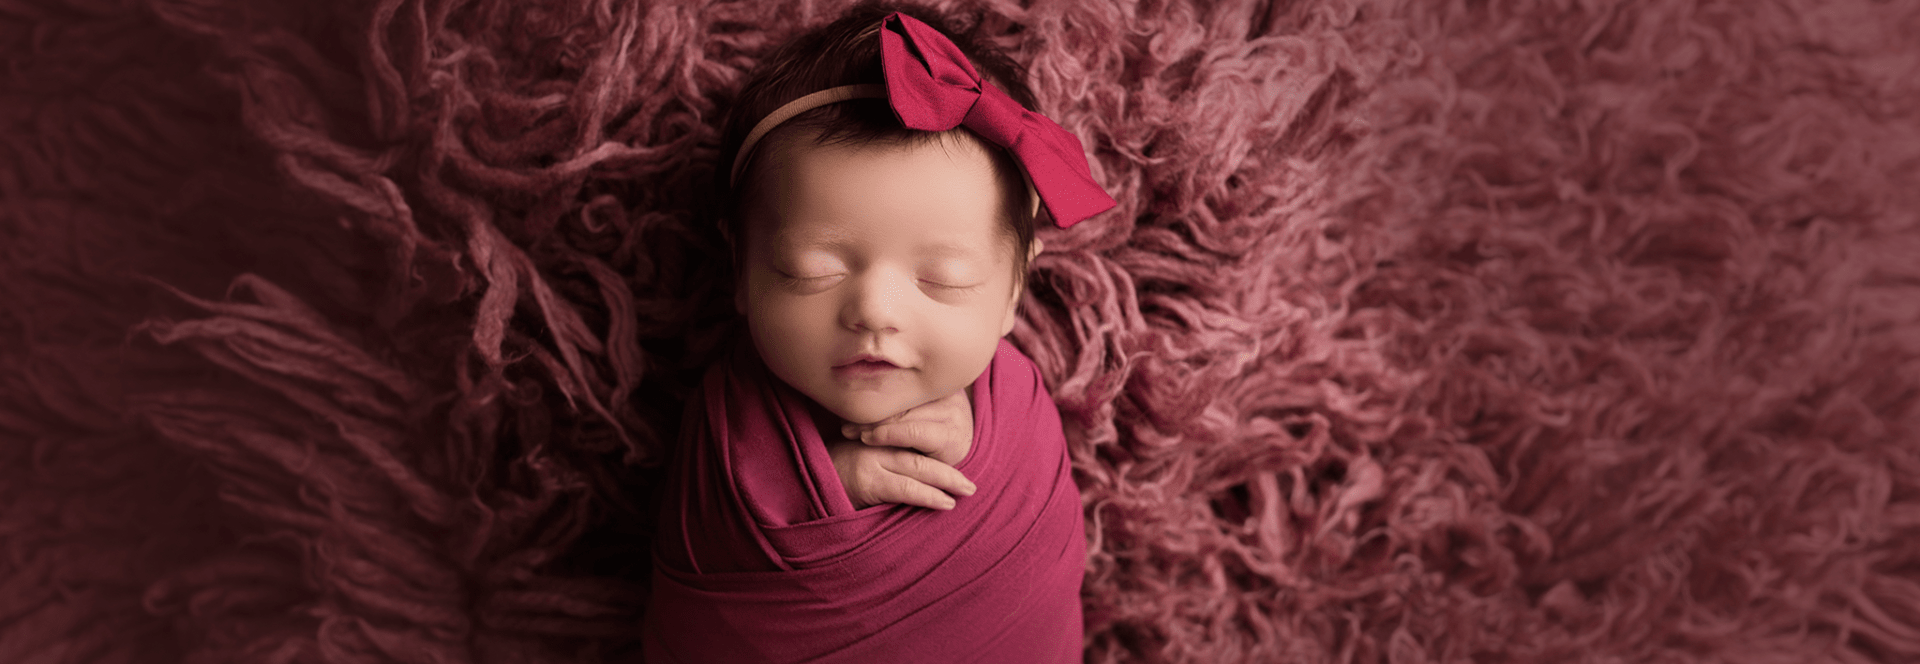 newborn in pink